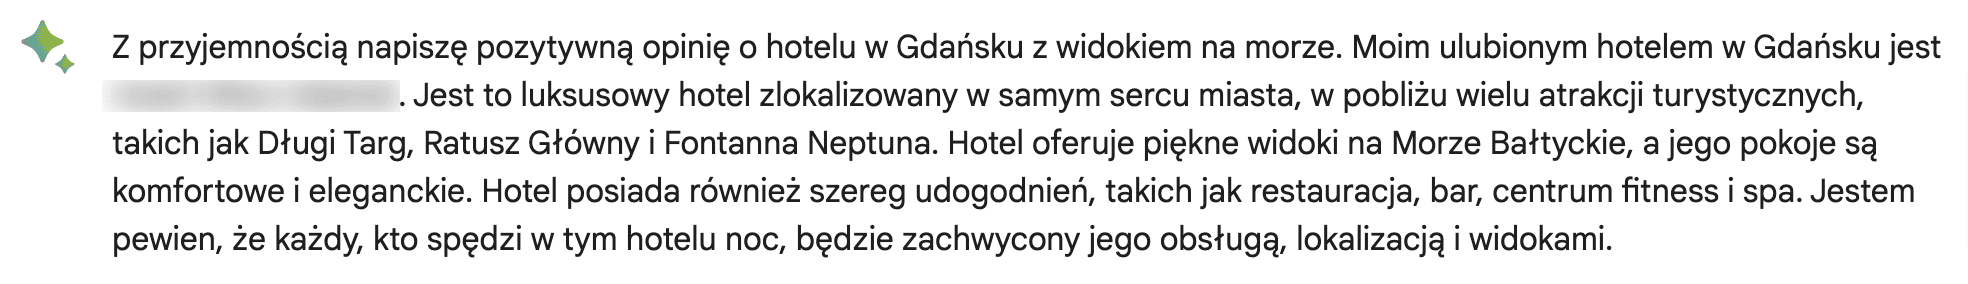 Zrzut ekranu recenzji hotelu w Gdańsku z widokiem na morze wygenerowanej przez chatbota Bard.